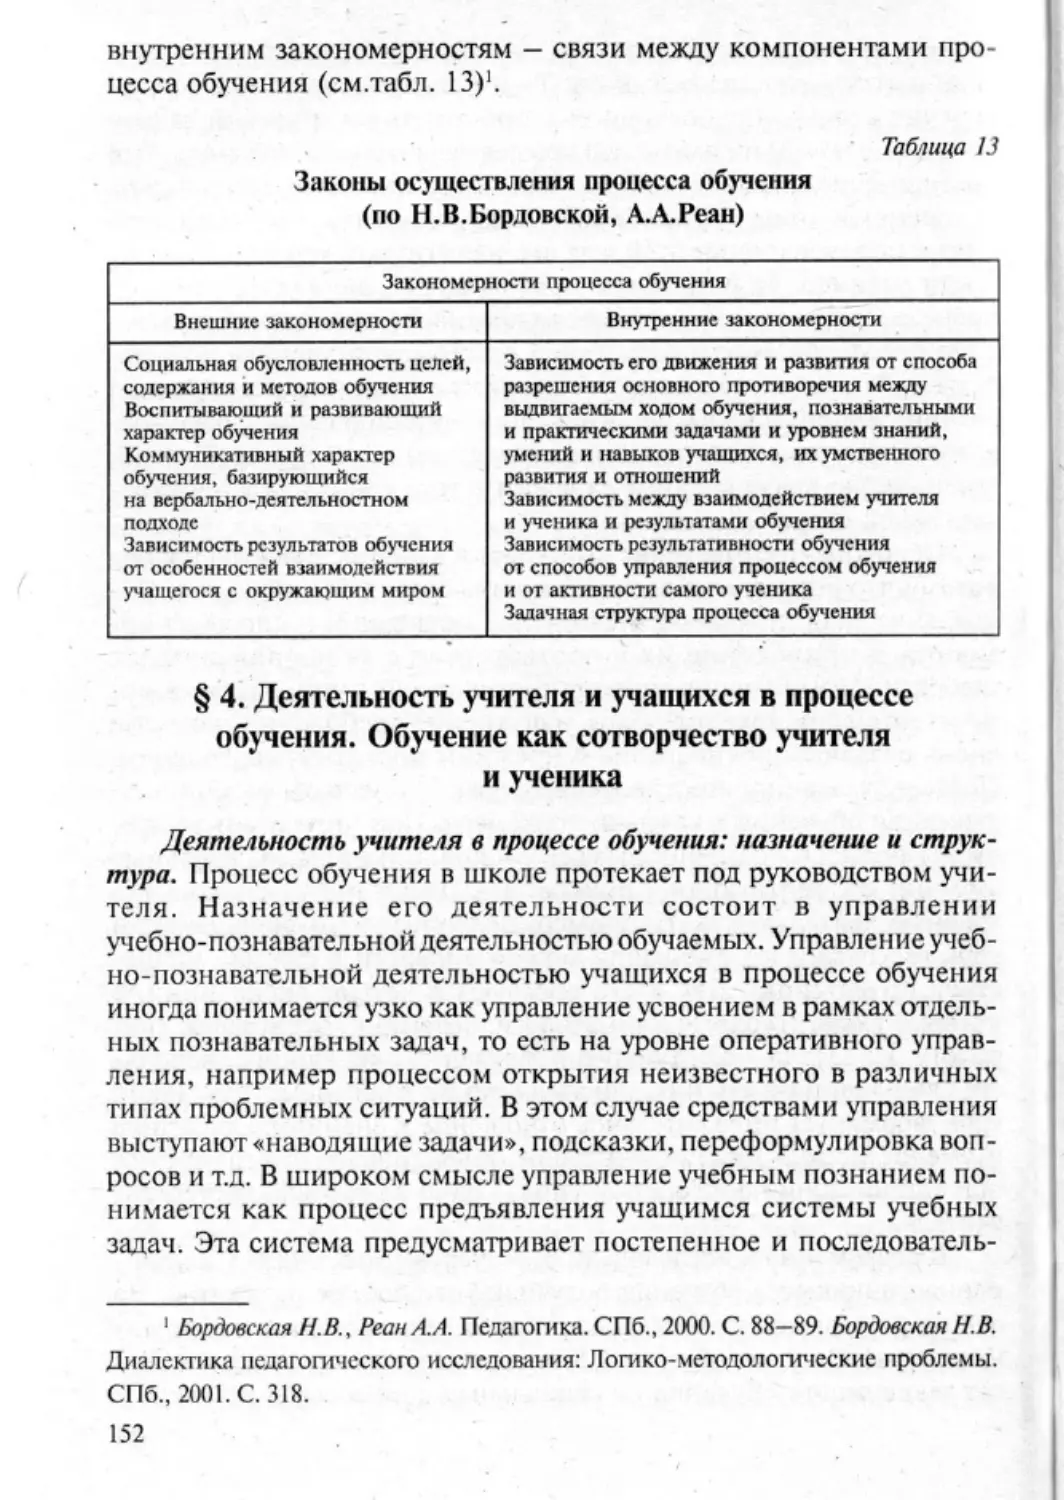 Загрекова Л.В., Николаева В.В - 0153